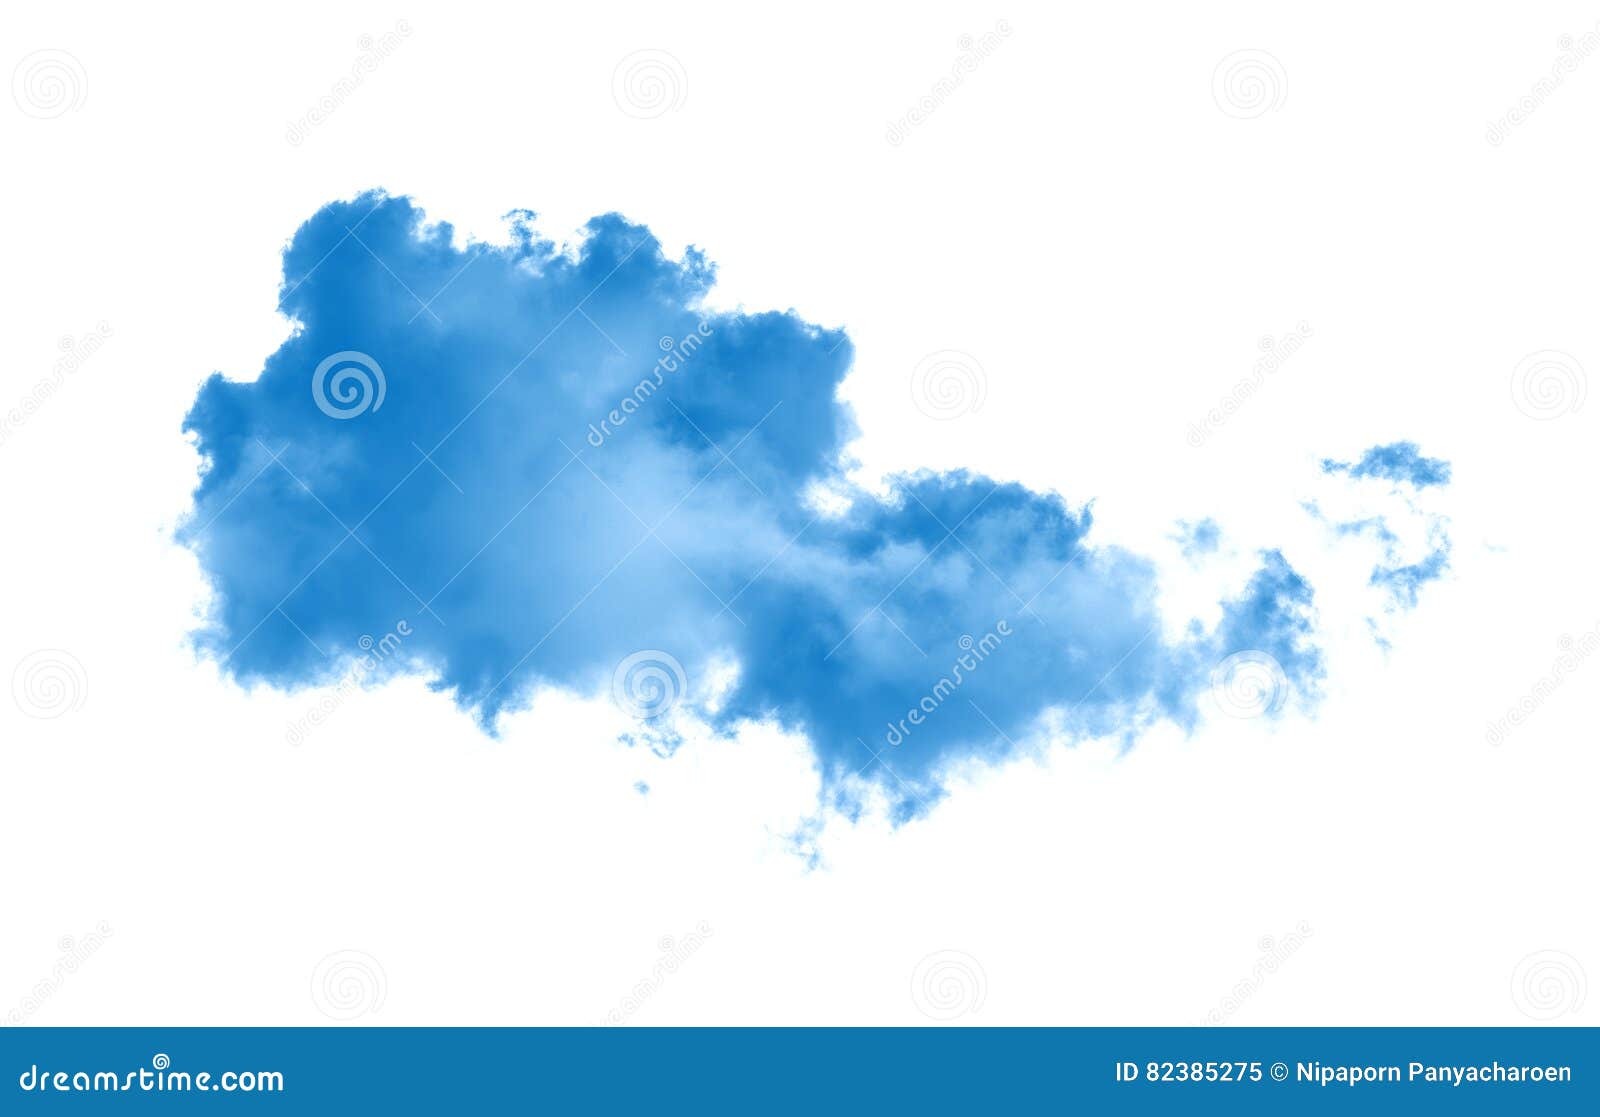 Nubes O Humo Azul Imagen De Archivo Imagen De Azul Nube 82385275 Letra del tango 'nubes de humo (fume compadre)'. dreamstime